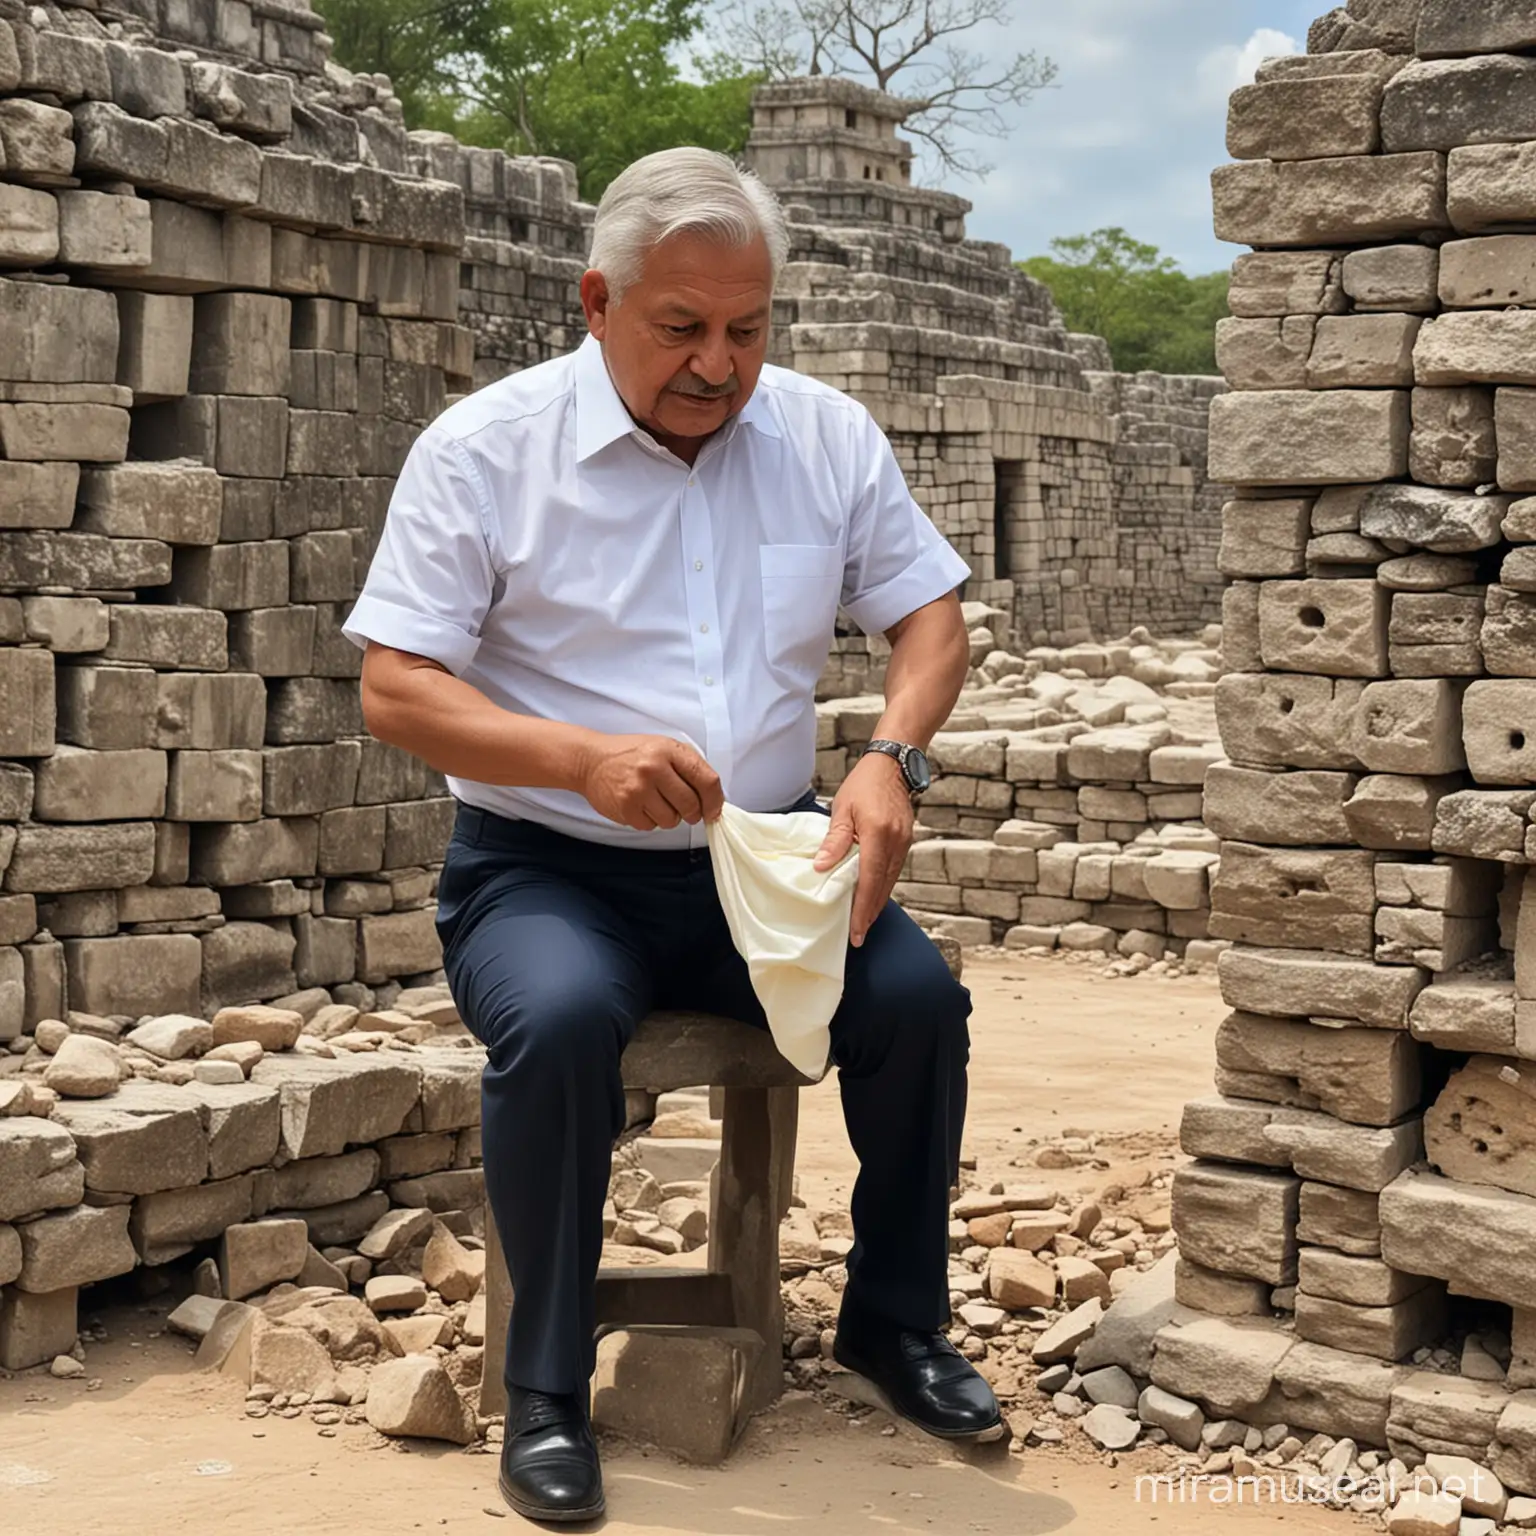 Andres Manuel Lpez Obrador Wearing Diaper at Mayan Ruins